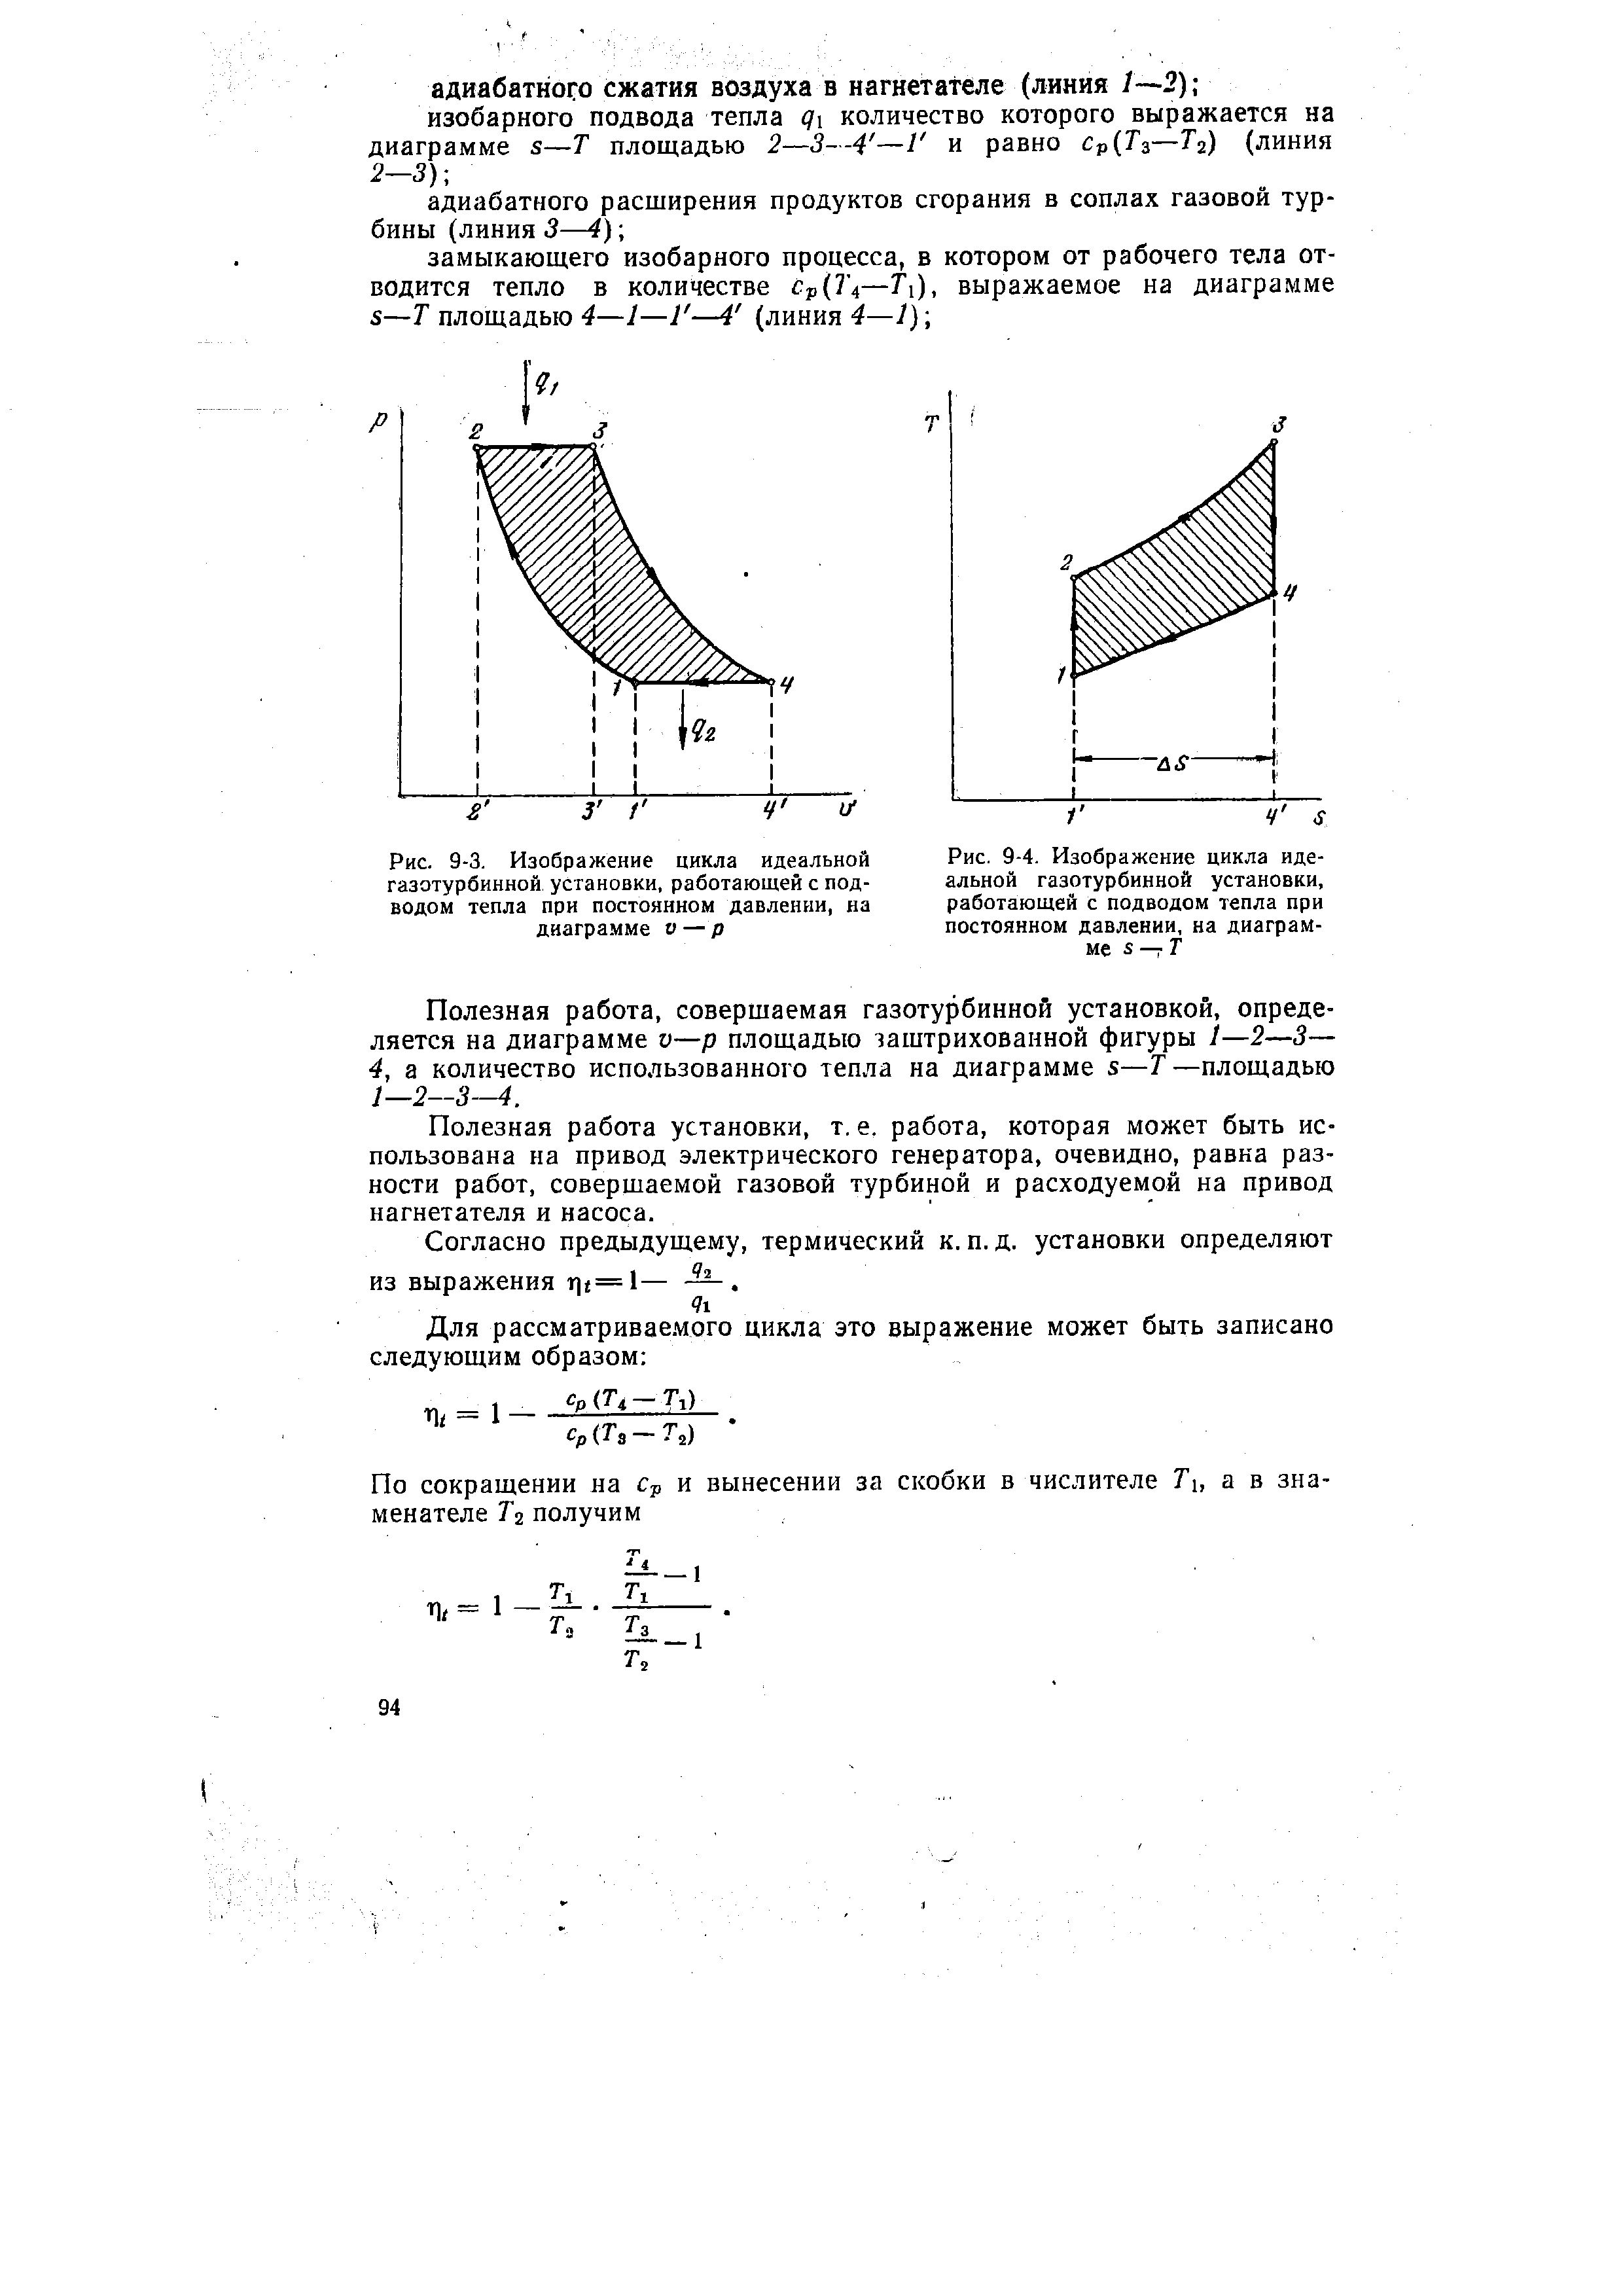 Рис. 9-3. Изображение цикла идеальной газотурбинной установки, работающей с подводом тепла при постоянном давлении, на диаграмме v — p
